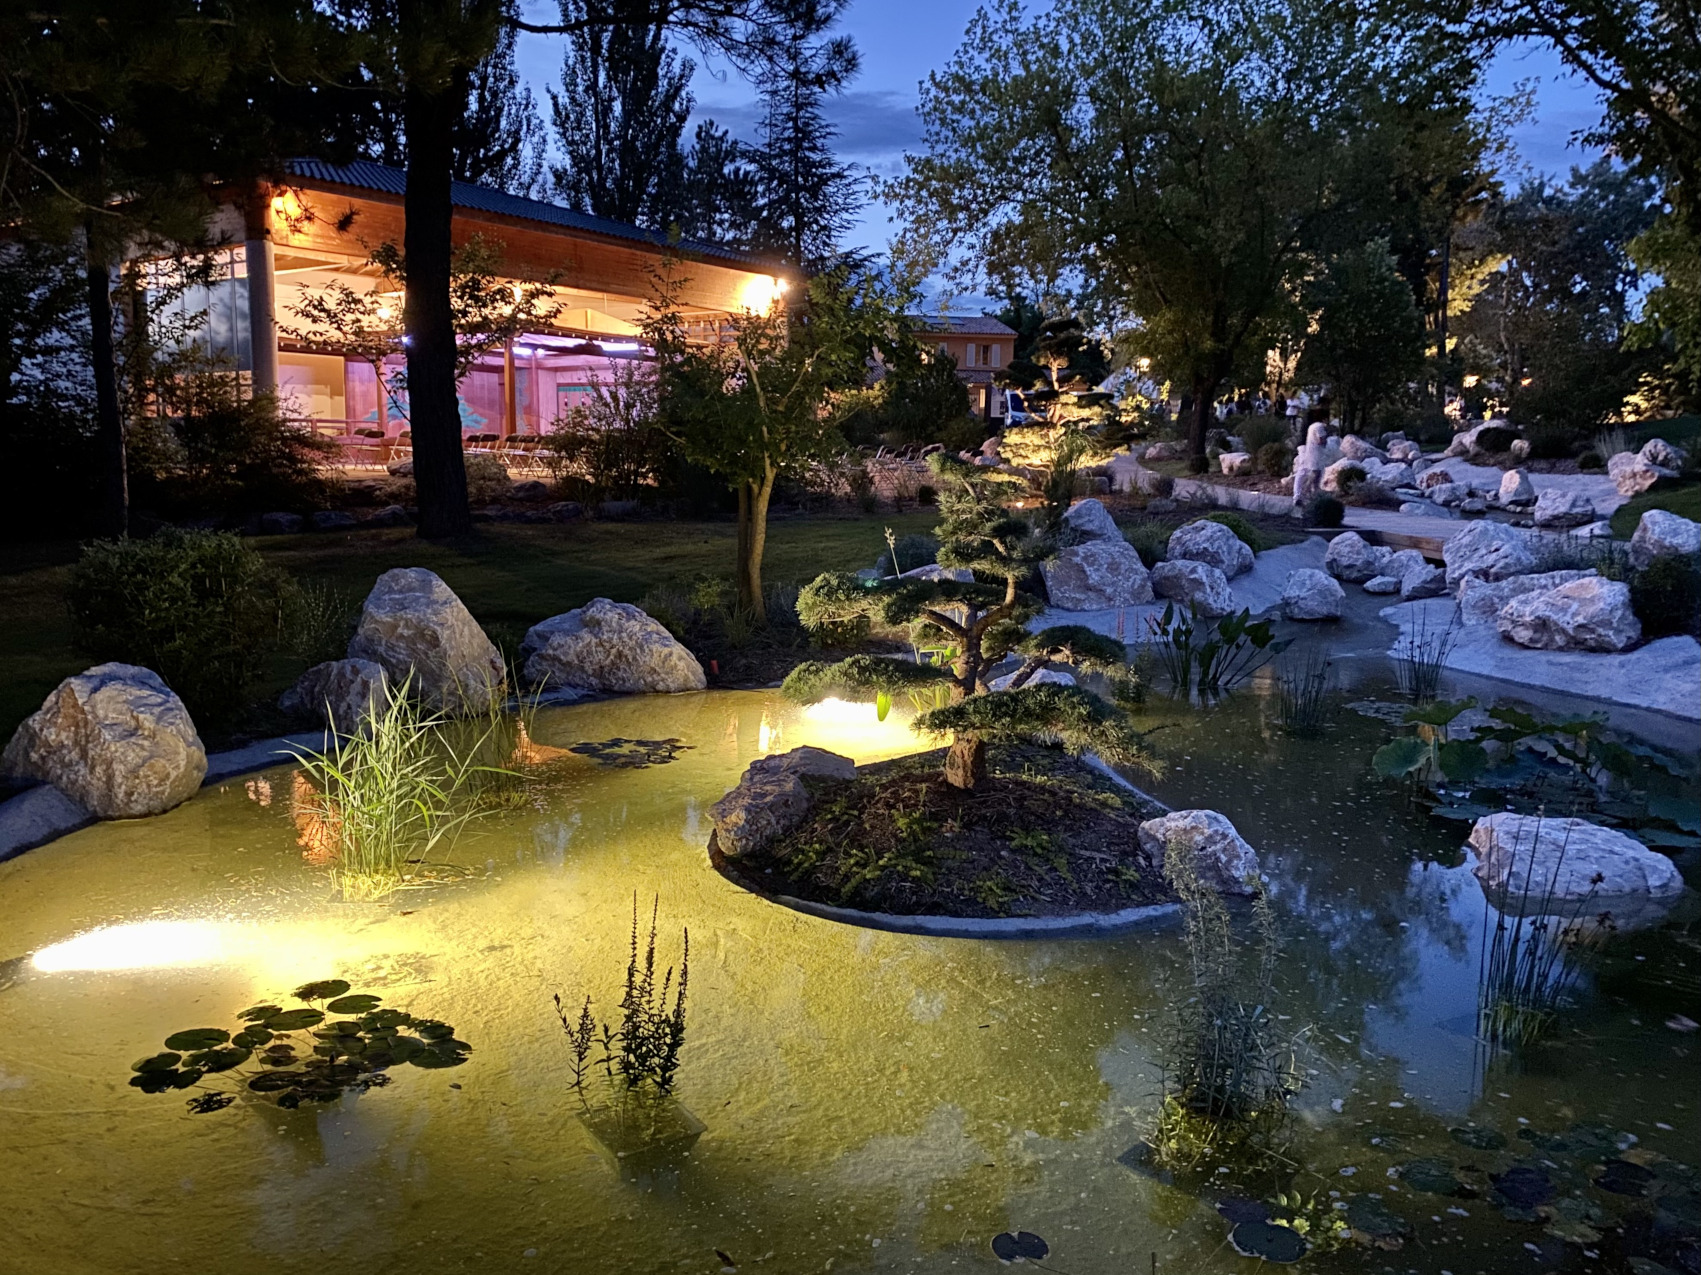 Un jardin japonais de 6 500 m² à Aix-en-Provence a été inauguré l’été dernier